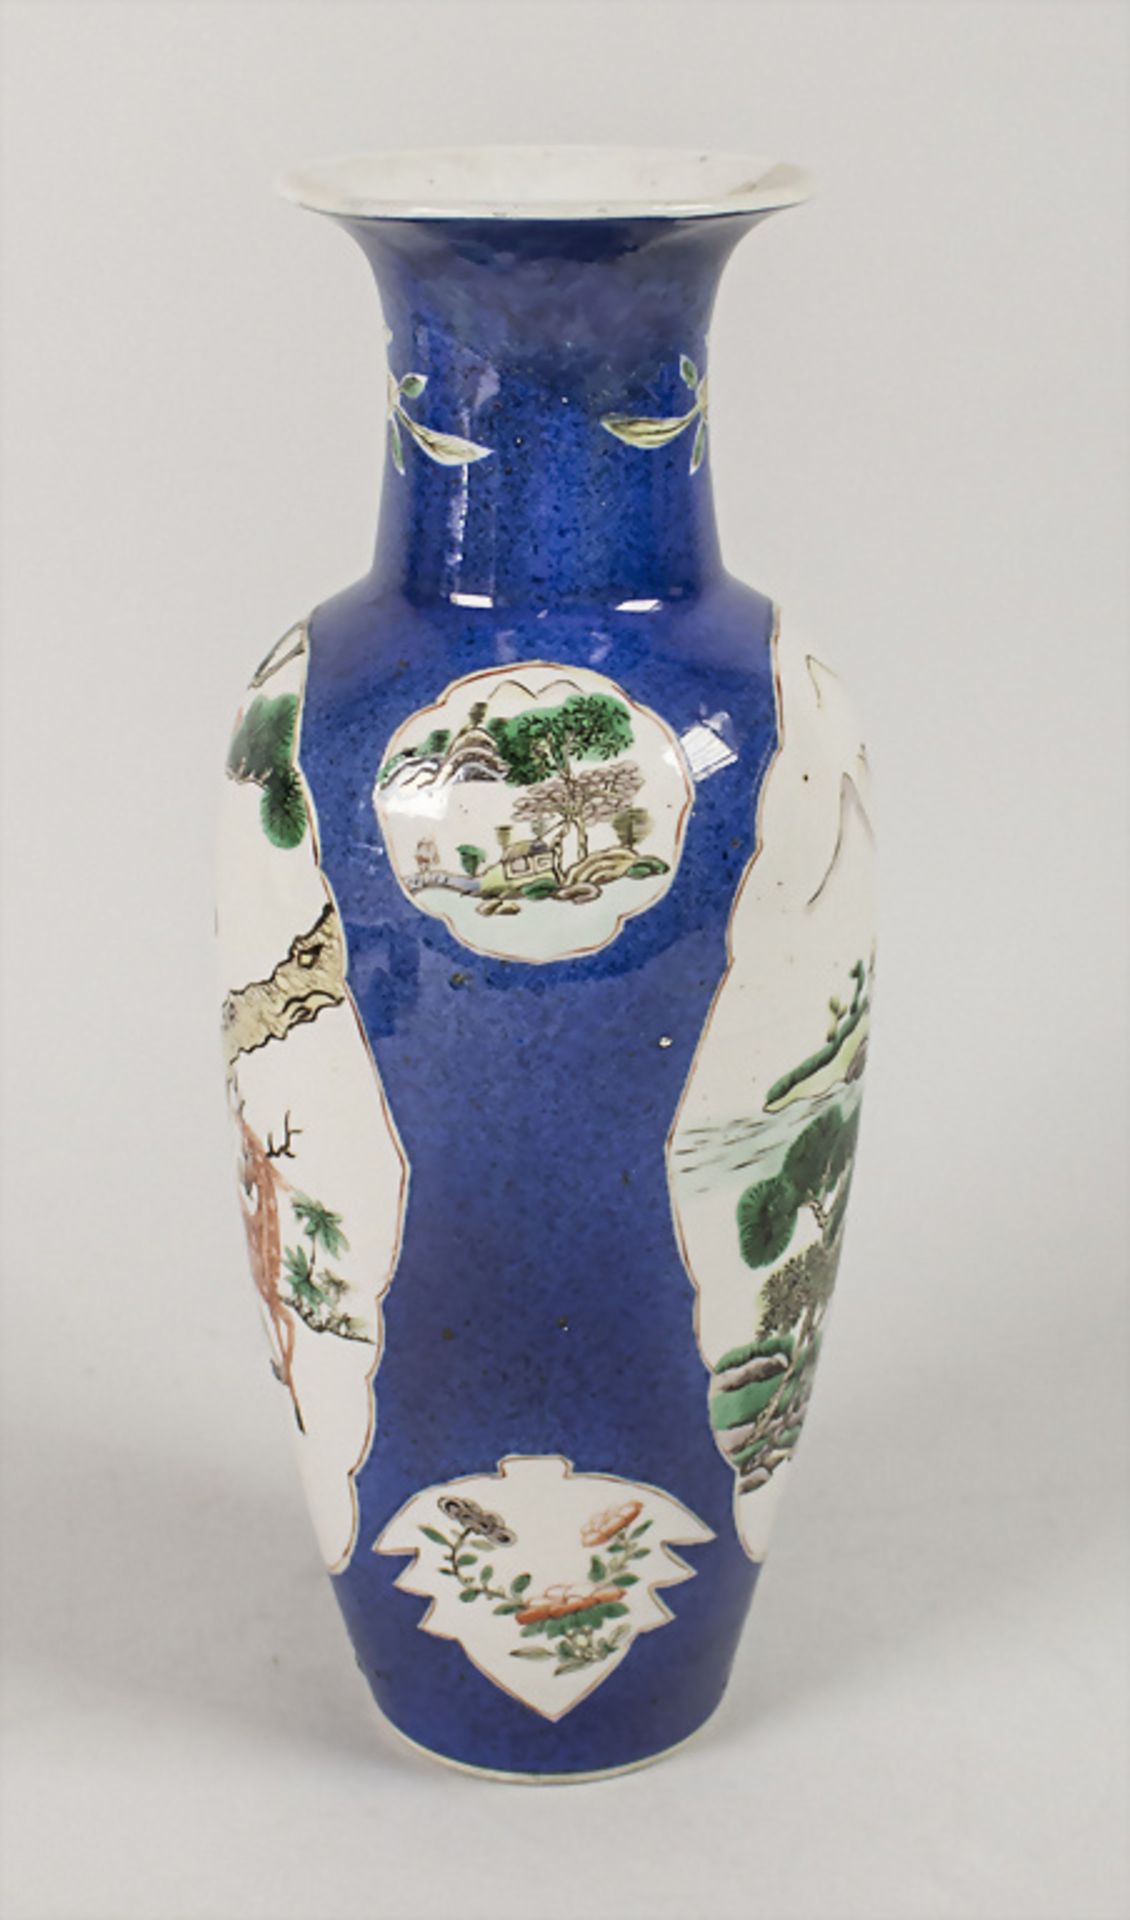 Ziervase / A decorative vase, China, Qing Dynastie (1644-1911), gemarkt Kangxi ( 1662-1722) - Bild 2 aus 5